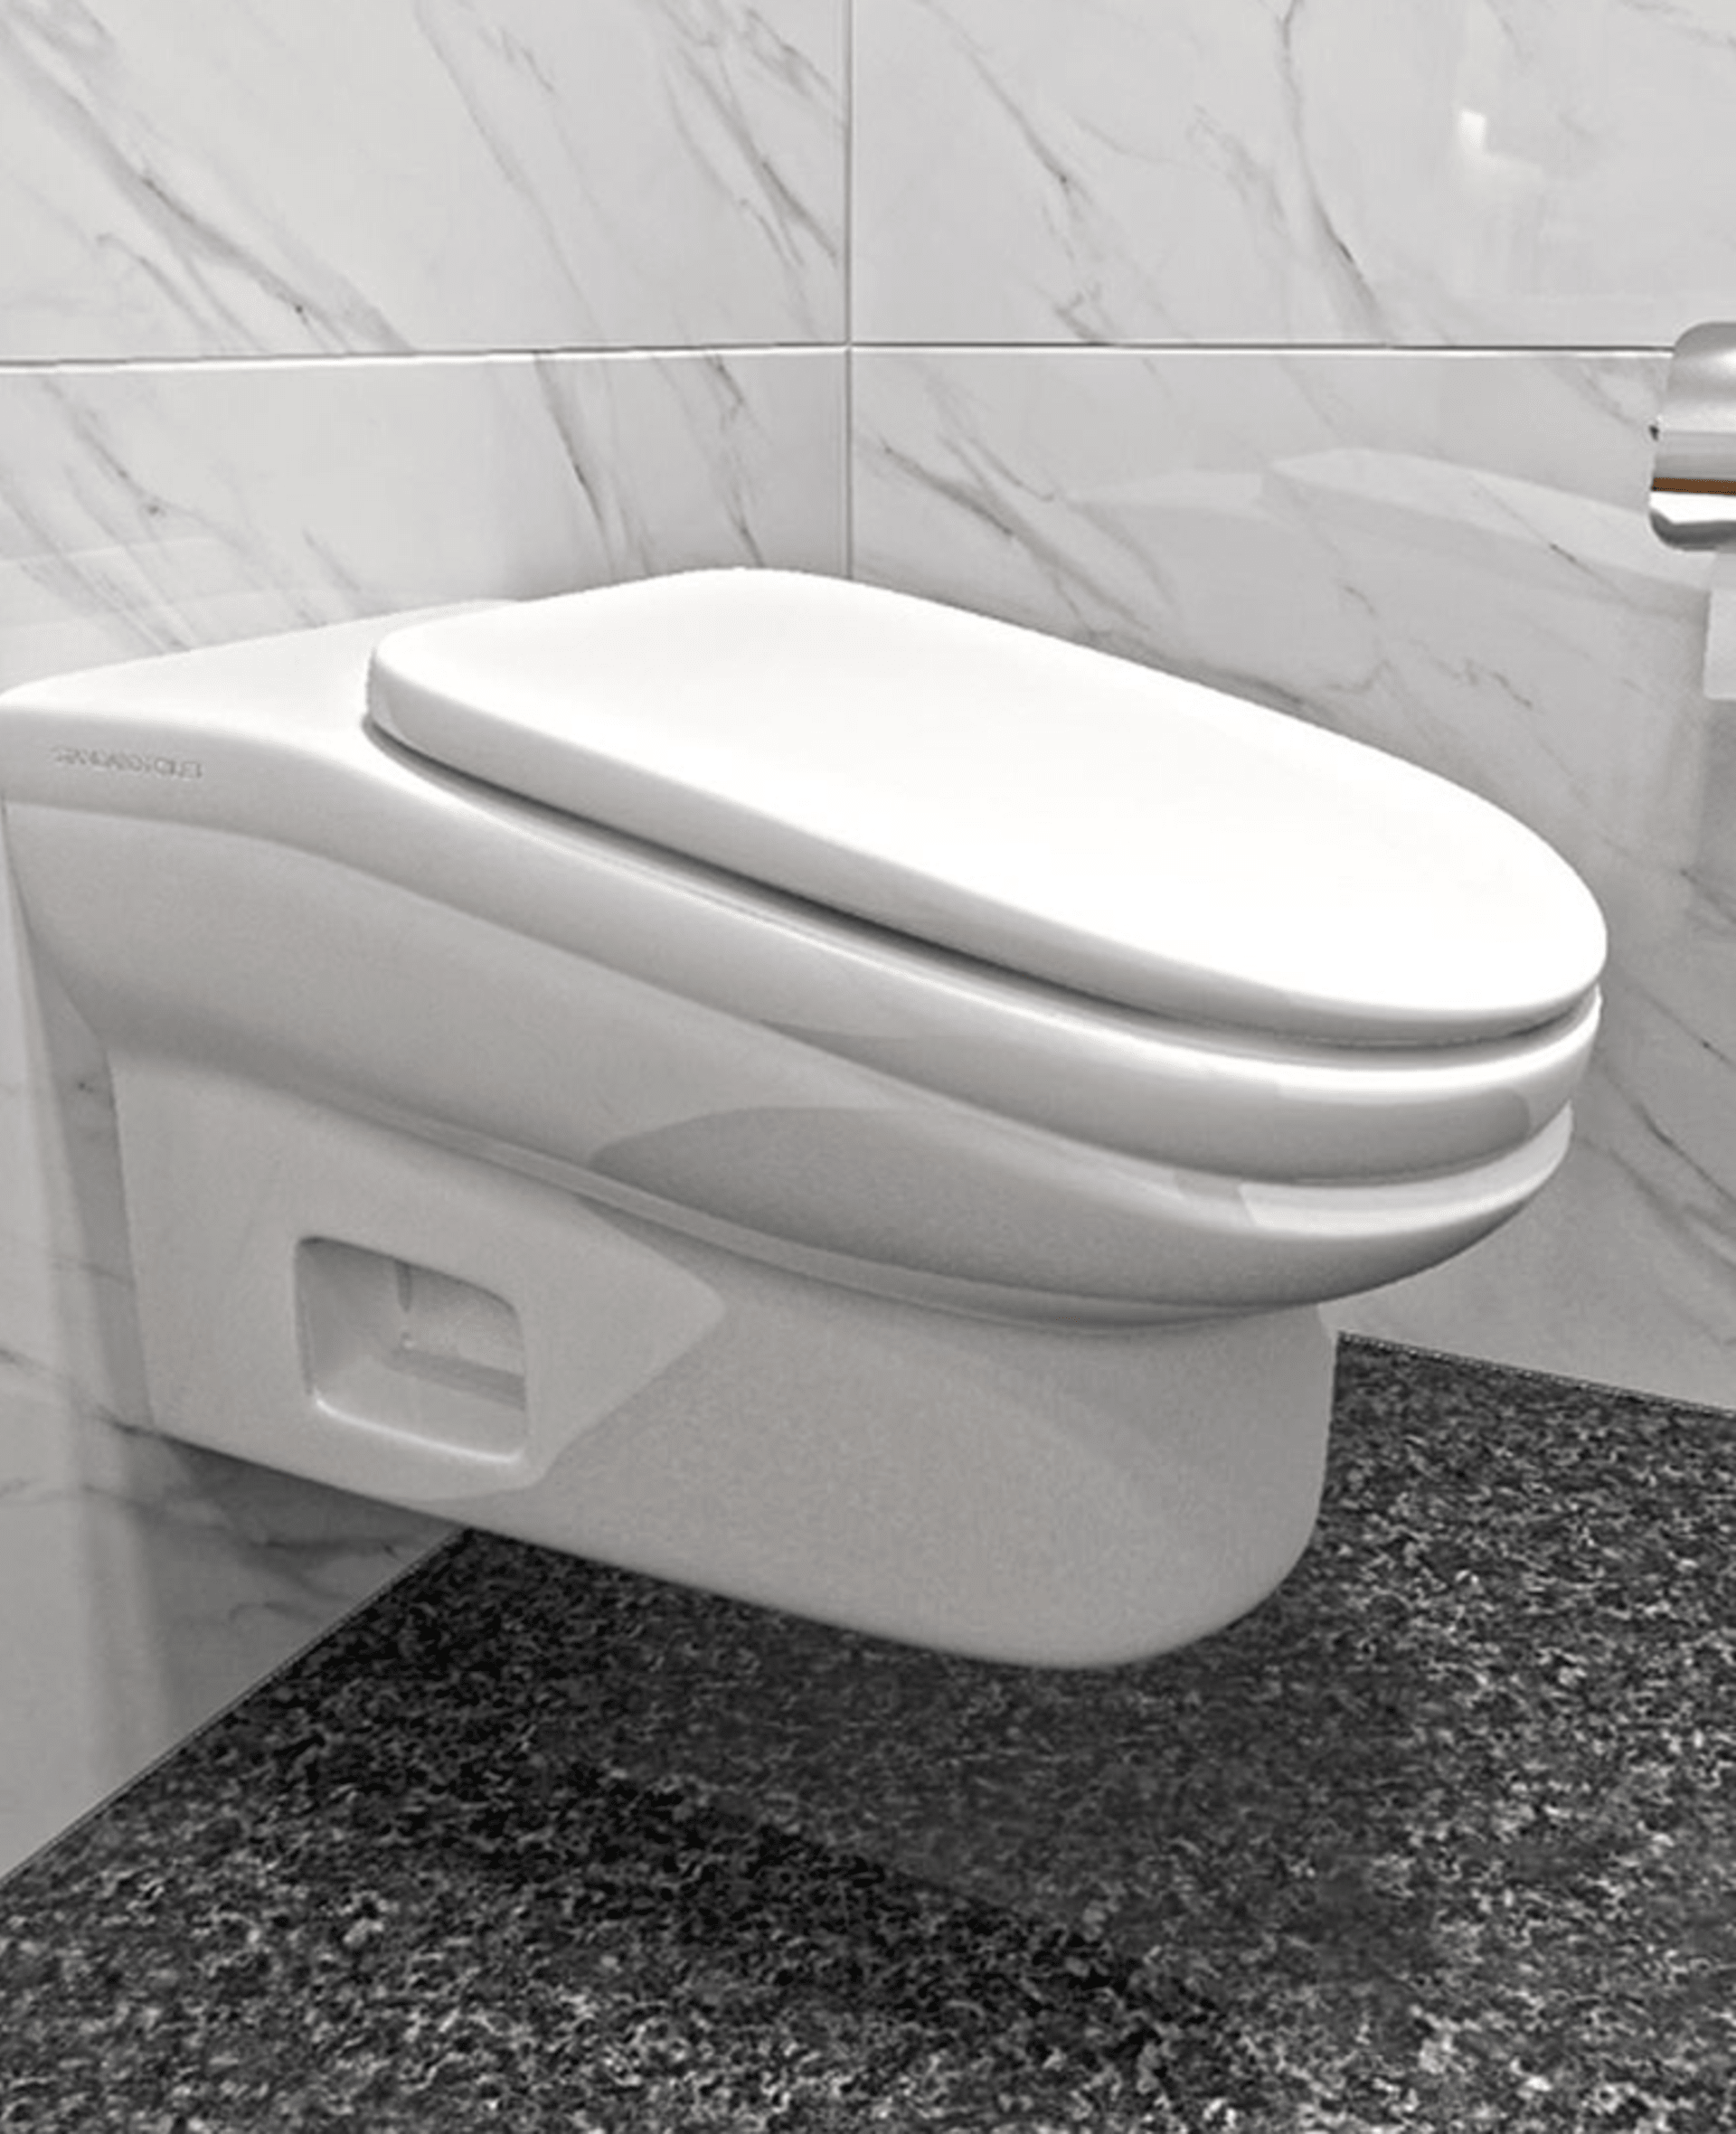 Záchodové prkénko je navrženo tak, aby se na něm po 5 minutách nedalo sedět, a vy tak neztráceli čas na záchodě